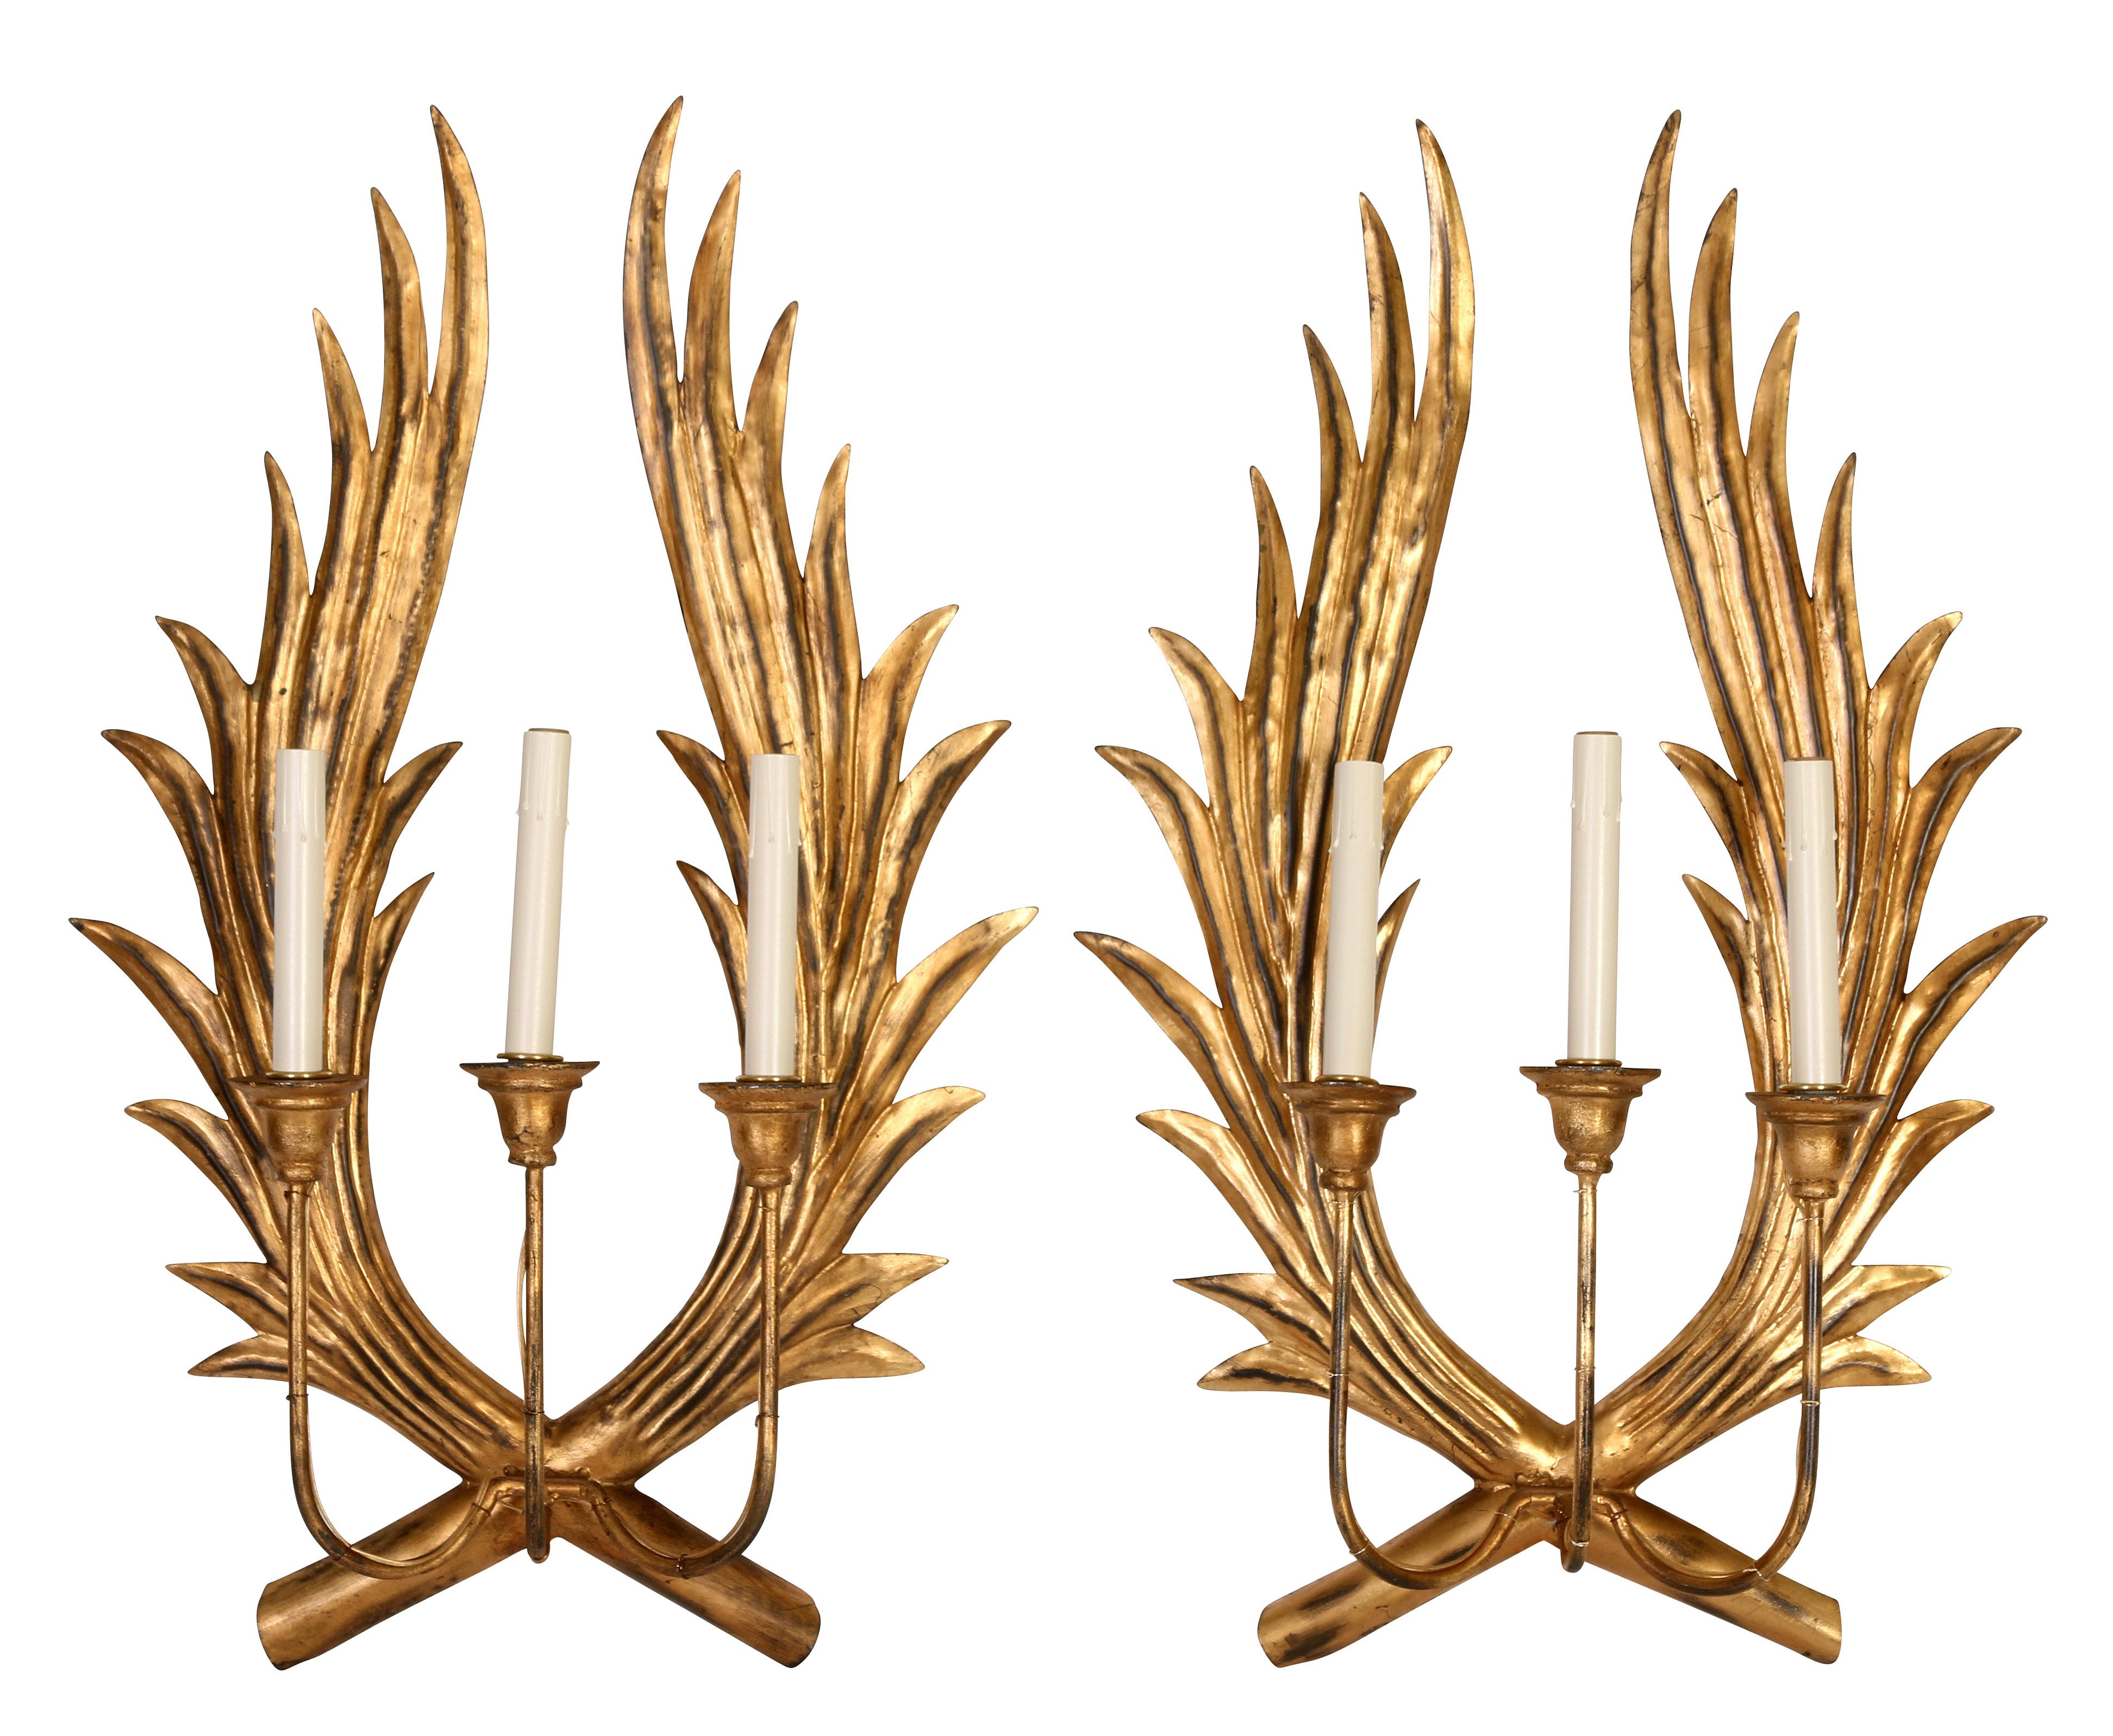 Ein Paar ungewöhnlicher und auffälliger vergoldeter Wandleuchten aus Metall mit sich kreuzenden Zweigen oder Flügeln, die drei Arme tragen. Eine dramatische Art, Licht in einen Eingang, ein Esszimmer oder ein Badezimmer zu bringen!